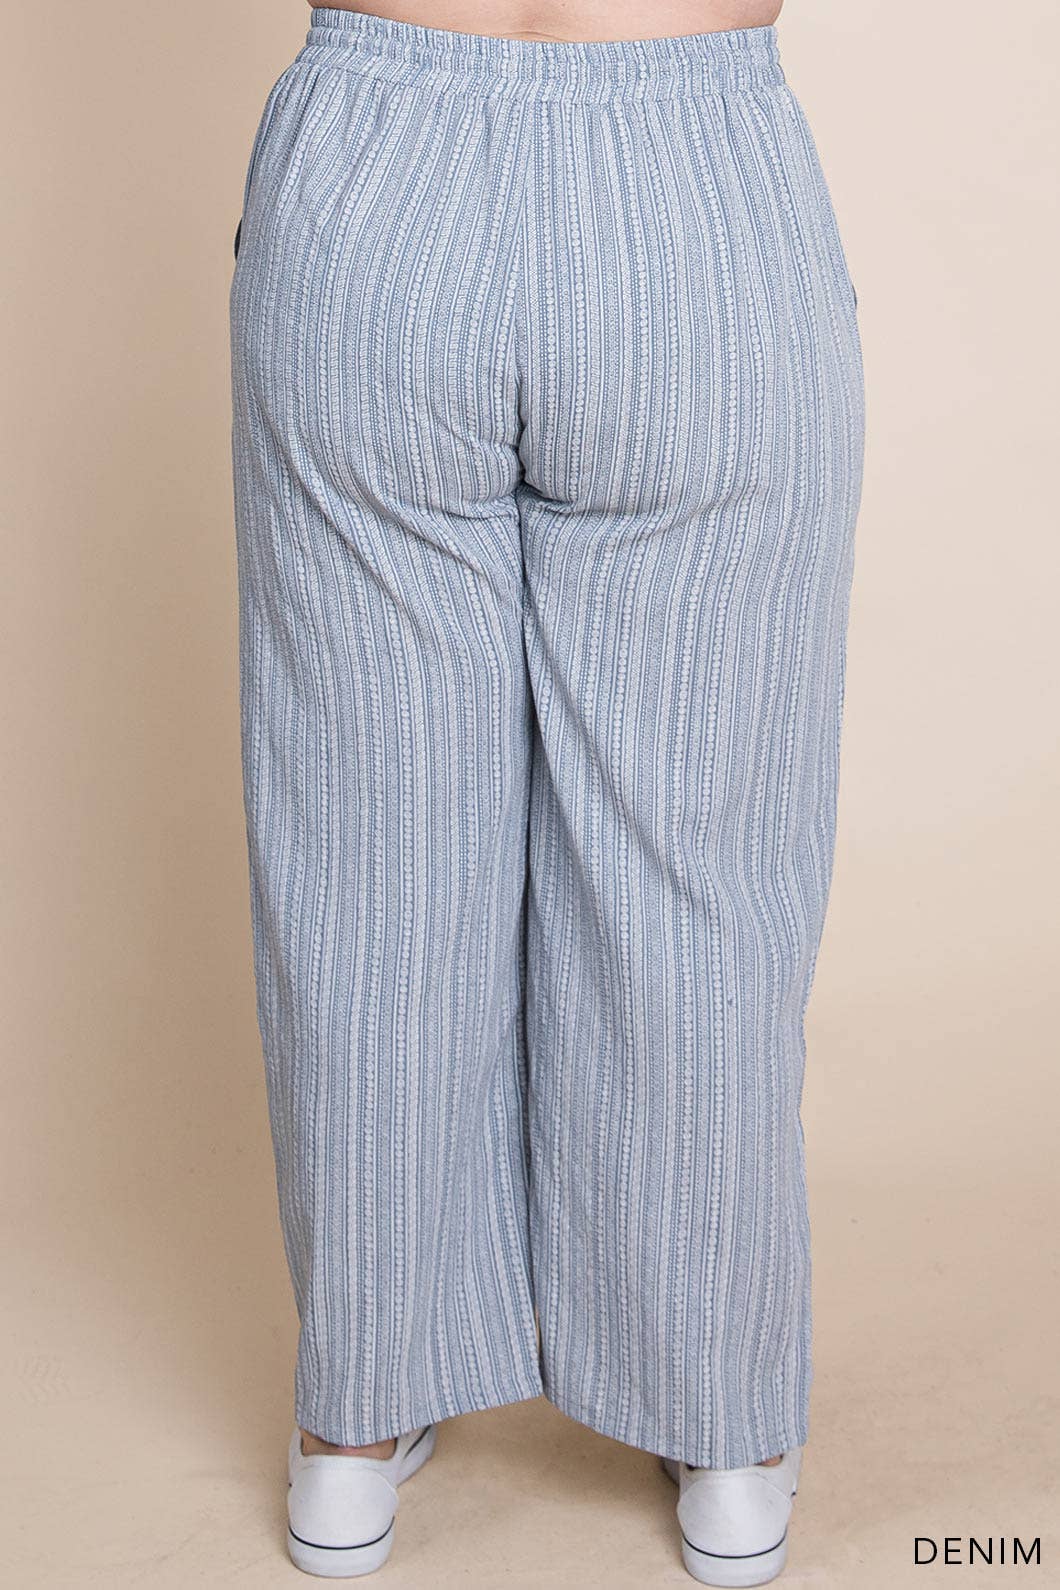 Curvy Boho Striped Ankle-Length Pants